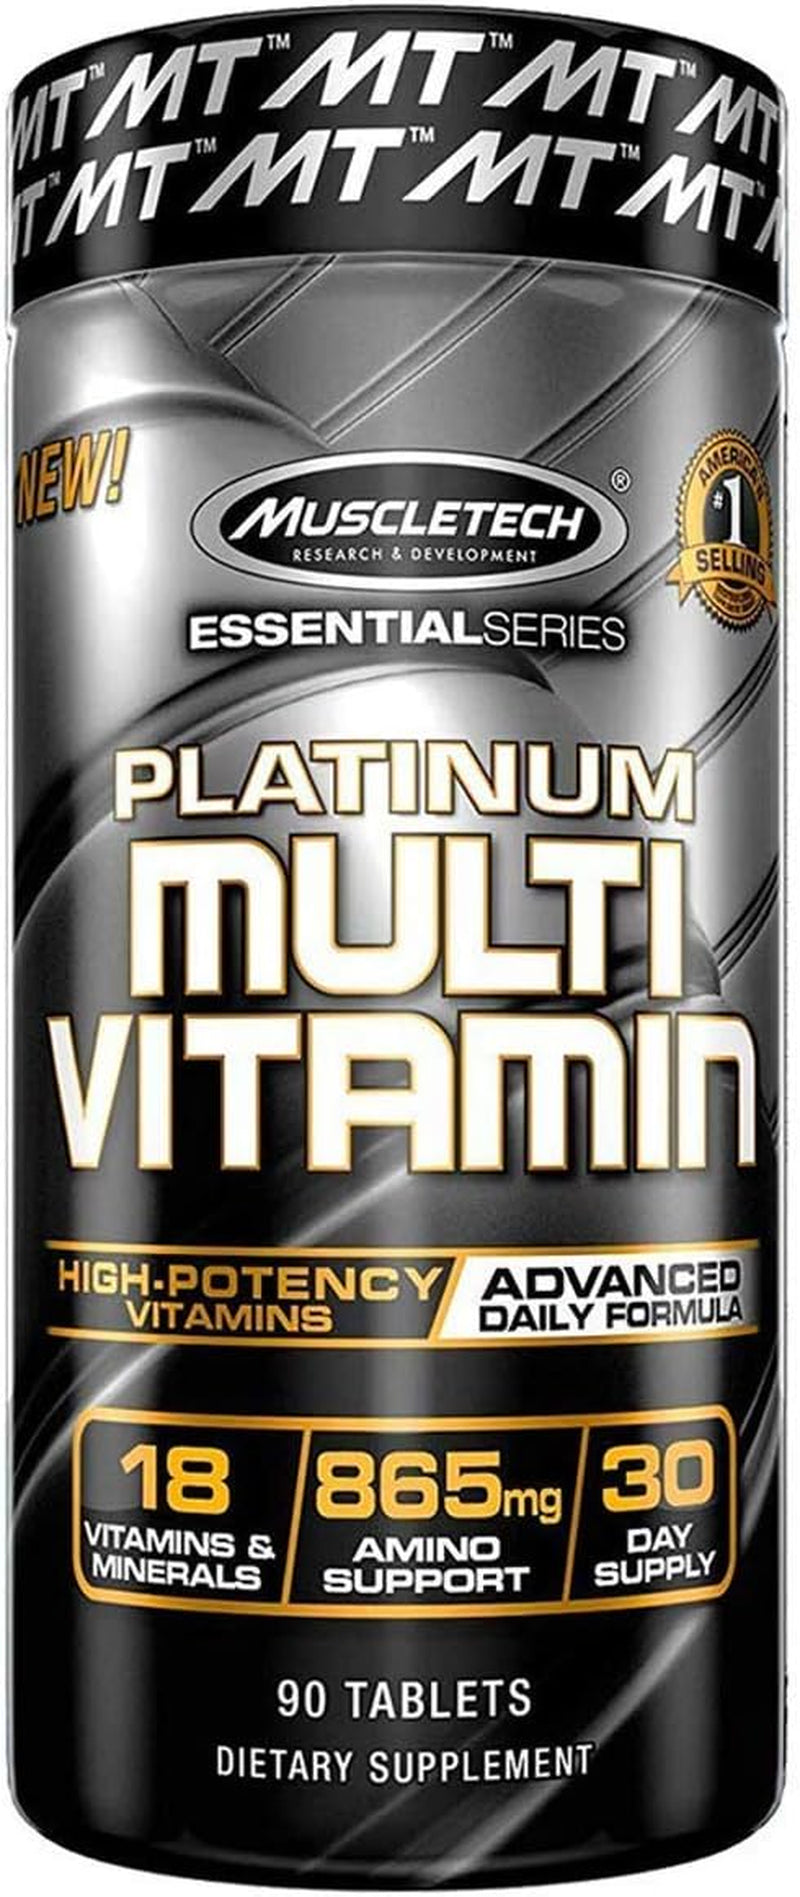 Multivitamin, Multi Vitamin for Adults, 90 Count